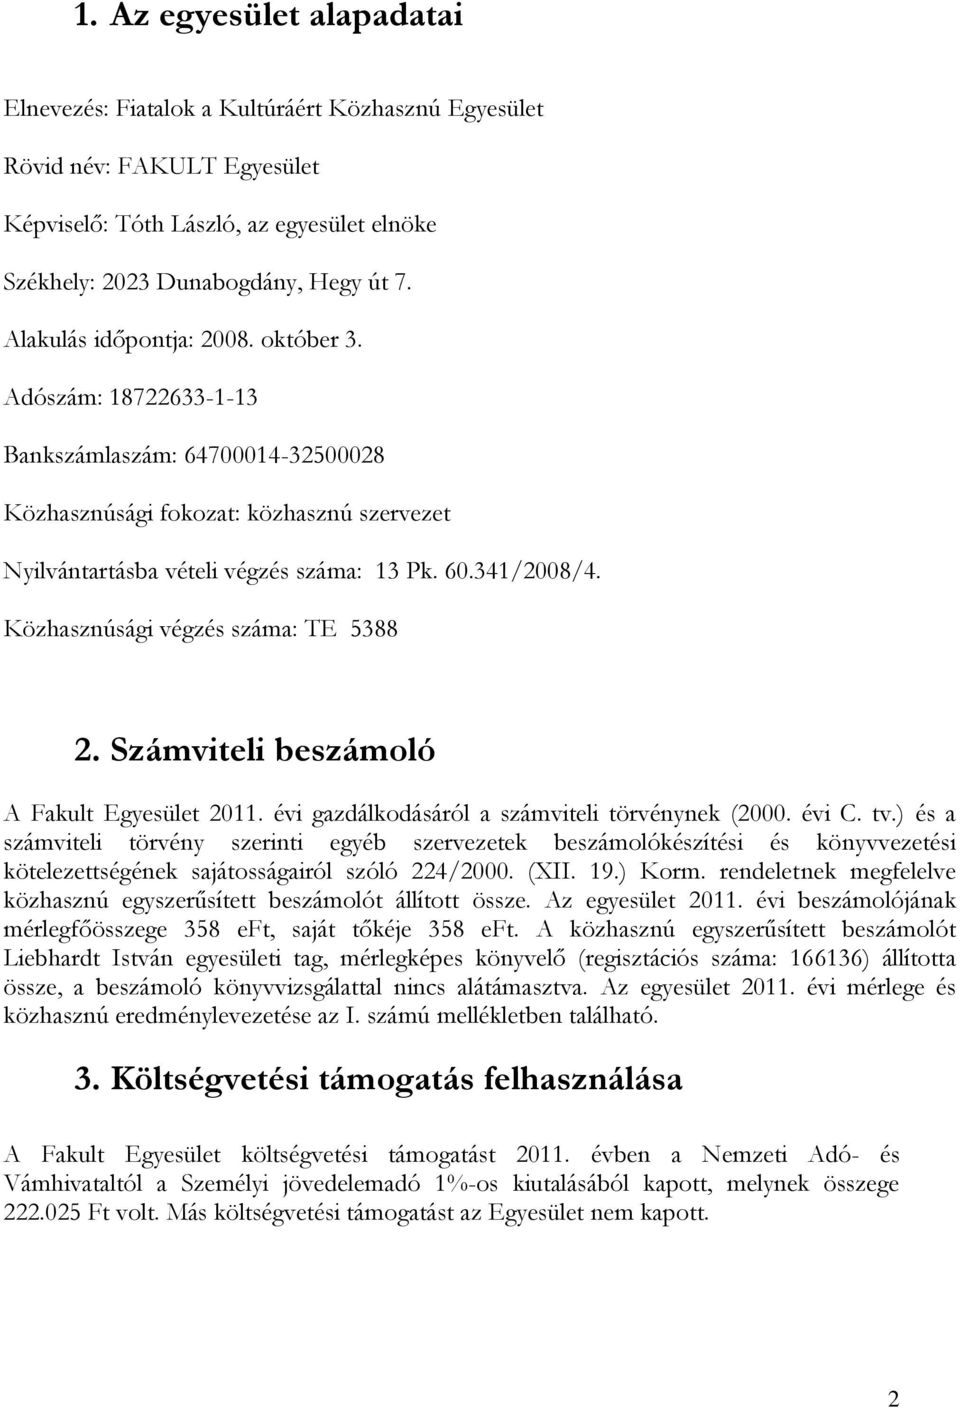 Közhasznúsági végzés száma: TE 5388 2. Számviteli beszámoló A Fakult Egyesület 2011. évi gazdálkodásáról a számviteli törvénynek (2000. évi C. tv.